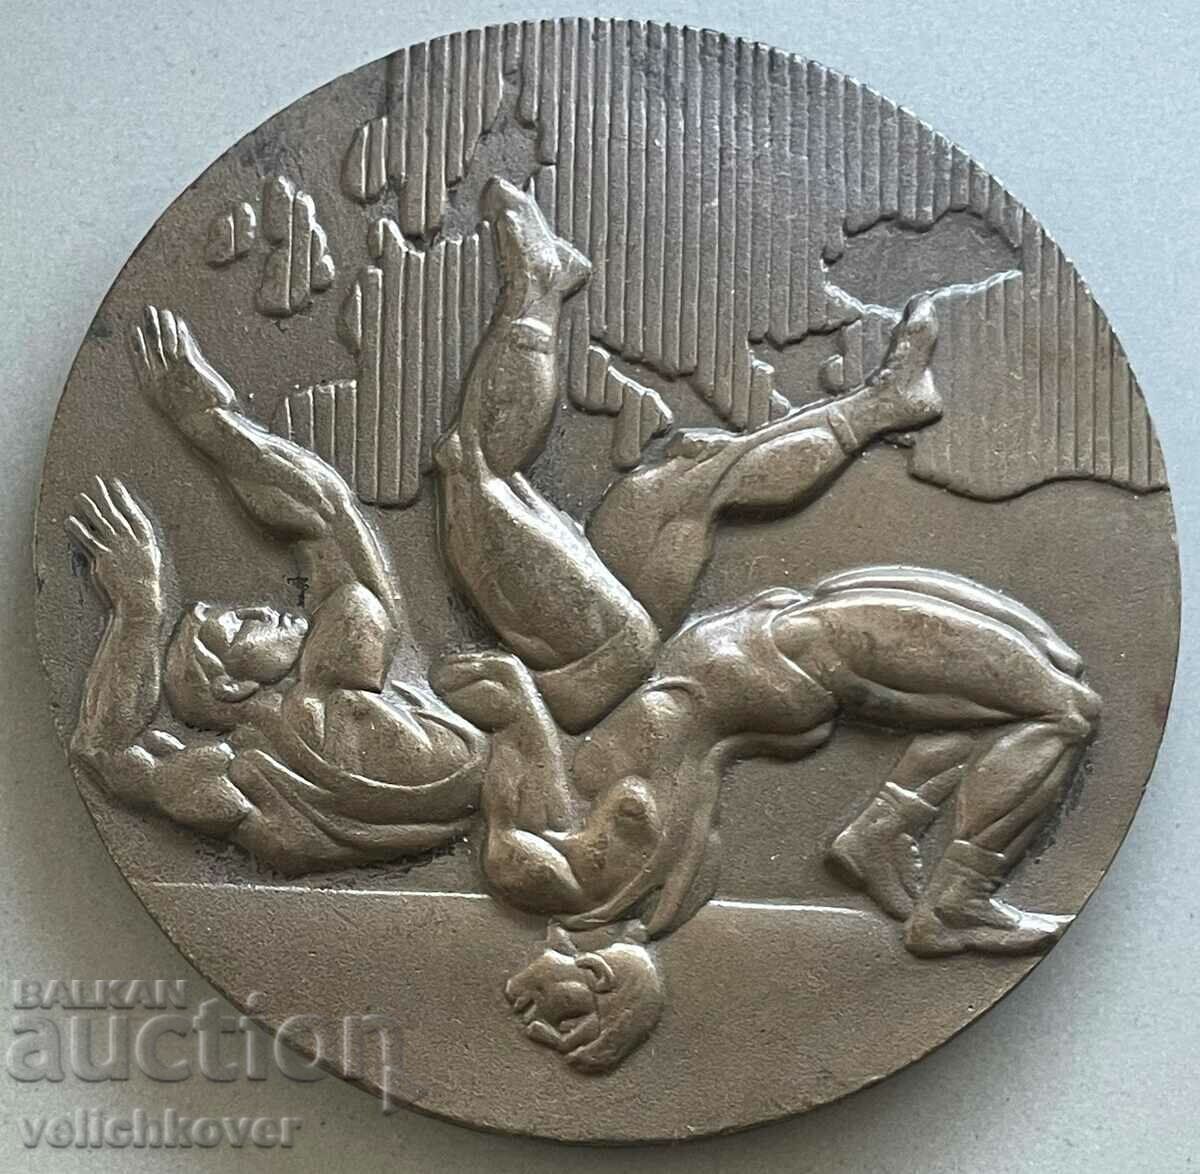 33501 Bulgaria placa Campionatul European de lupte Varna 1992